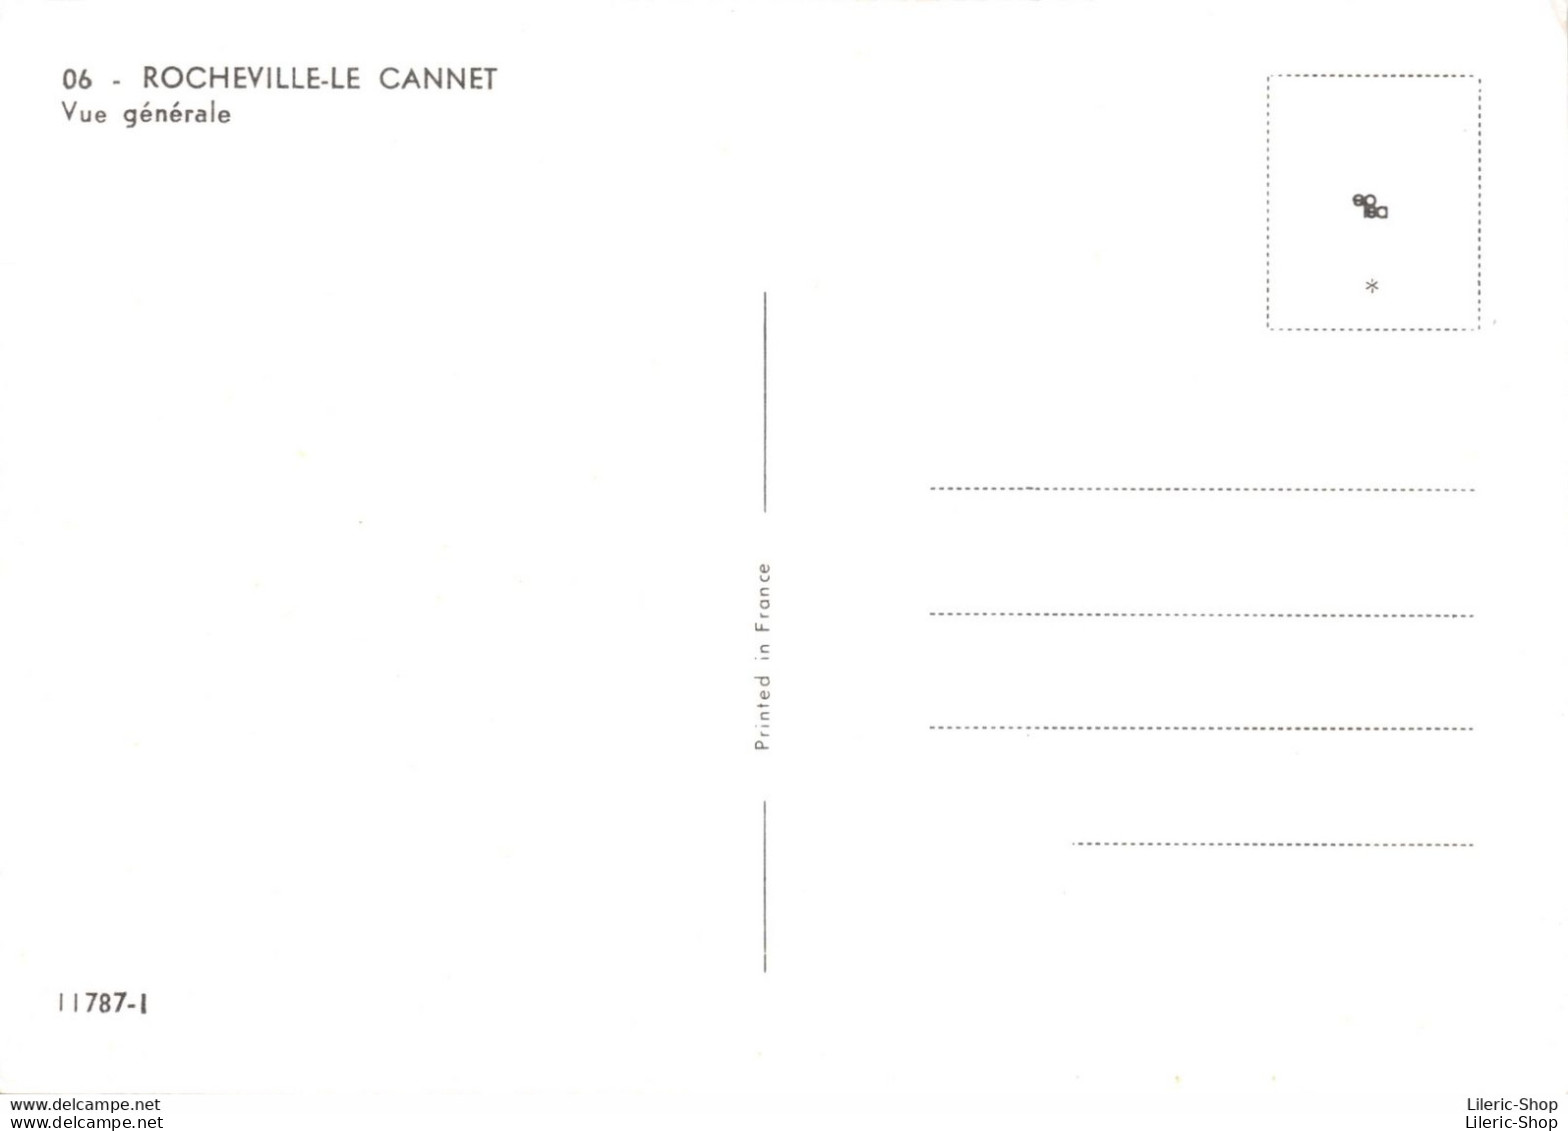 [06] Le Cannet - Lot de 6 cpm  ♥♥♥